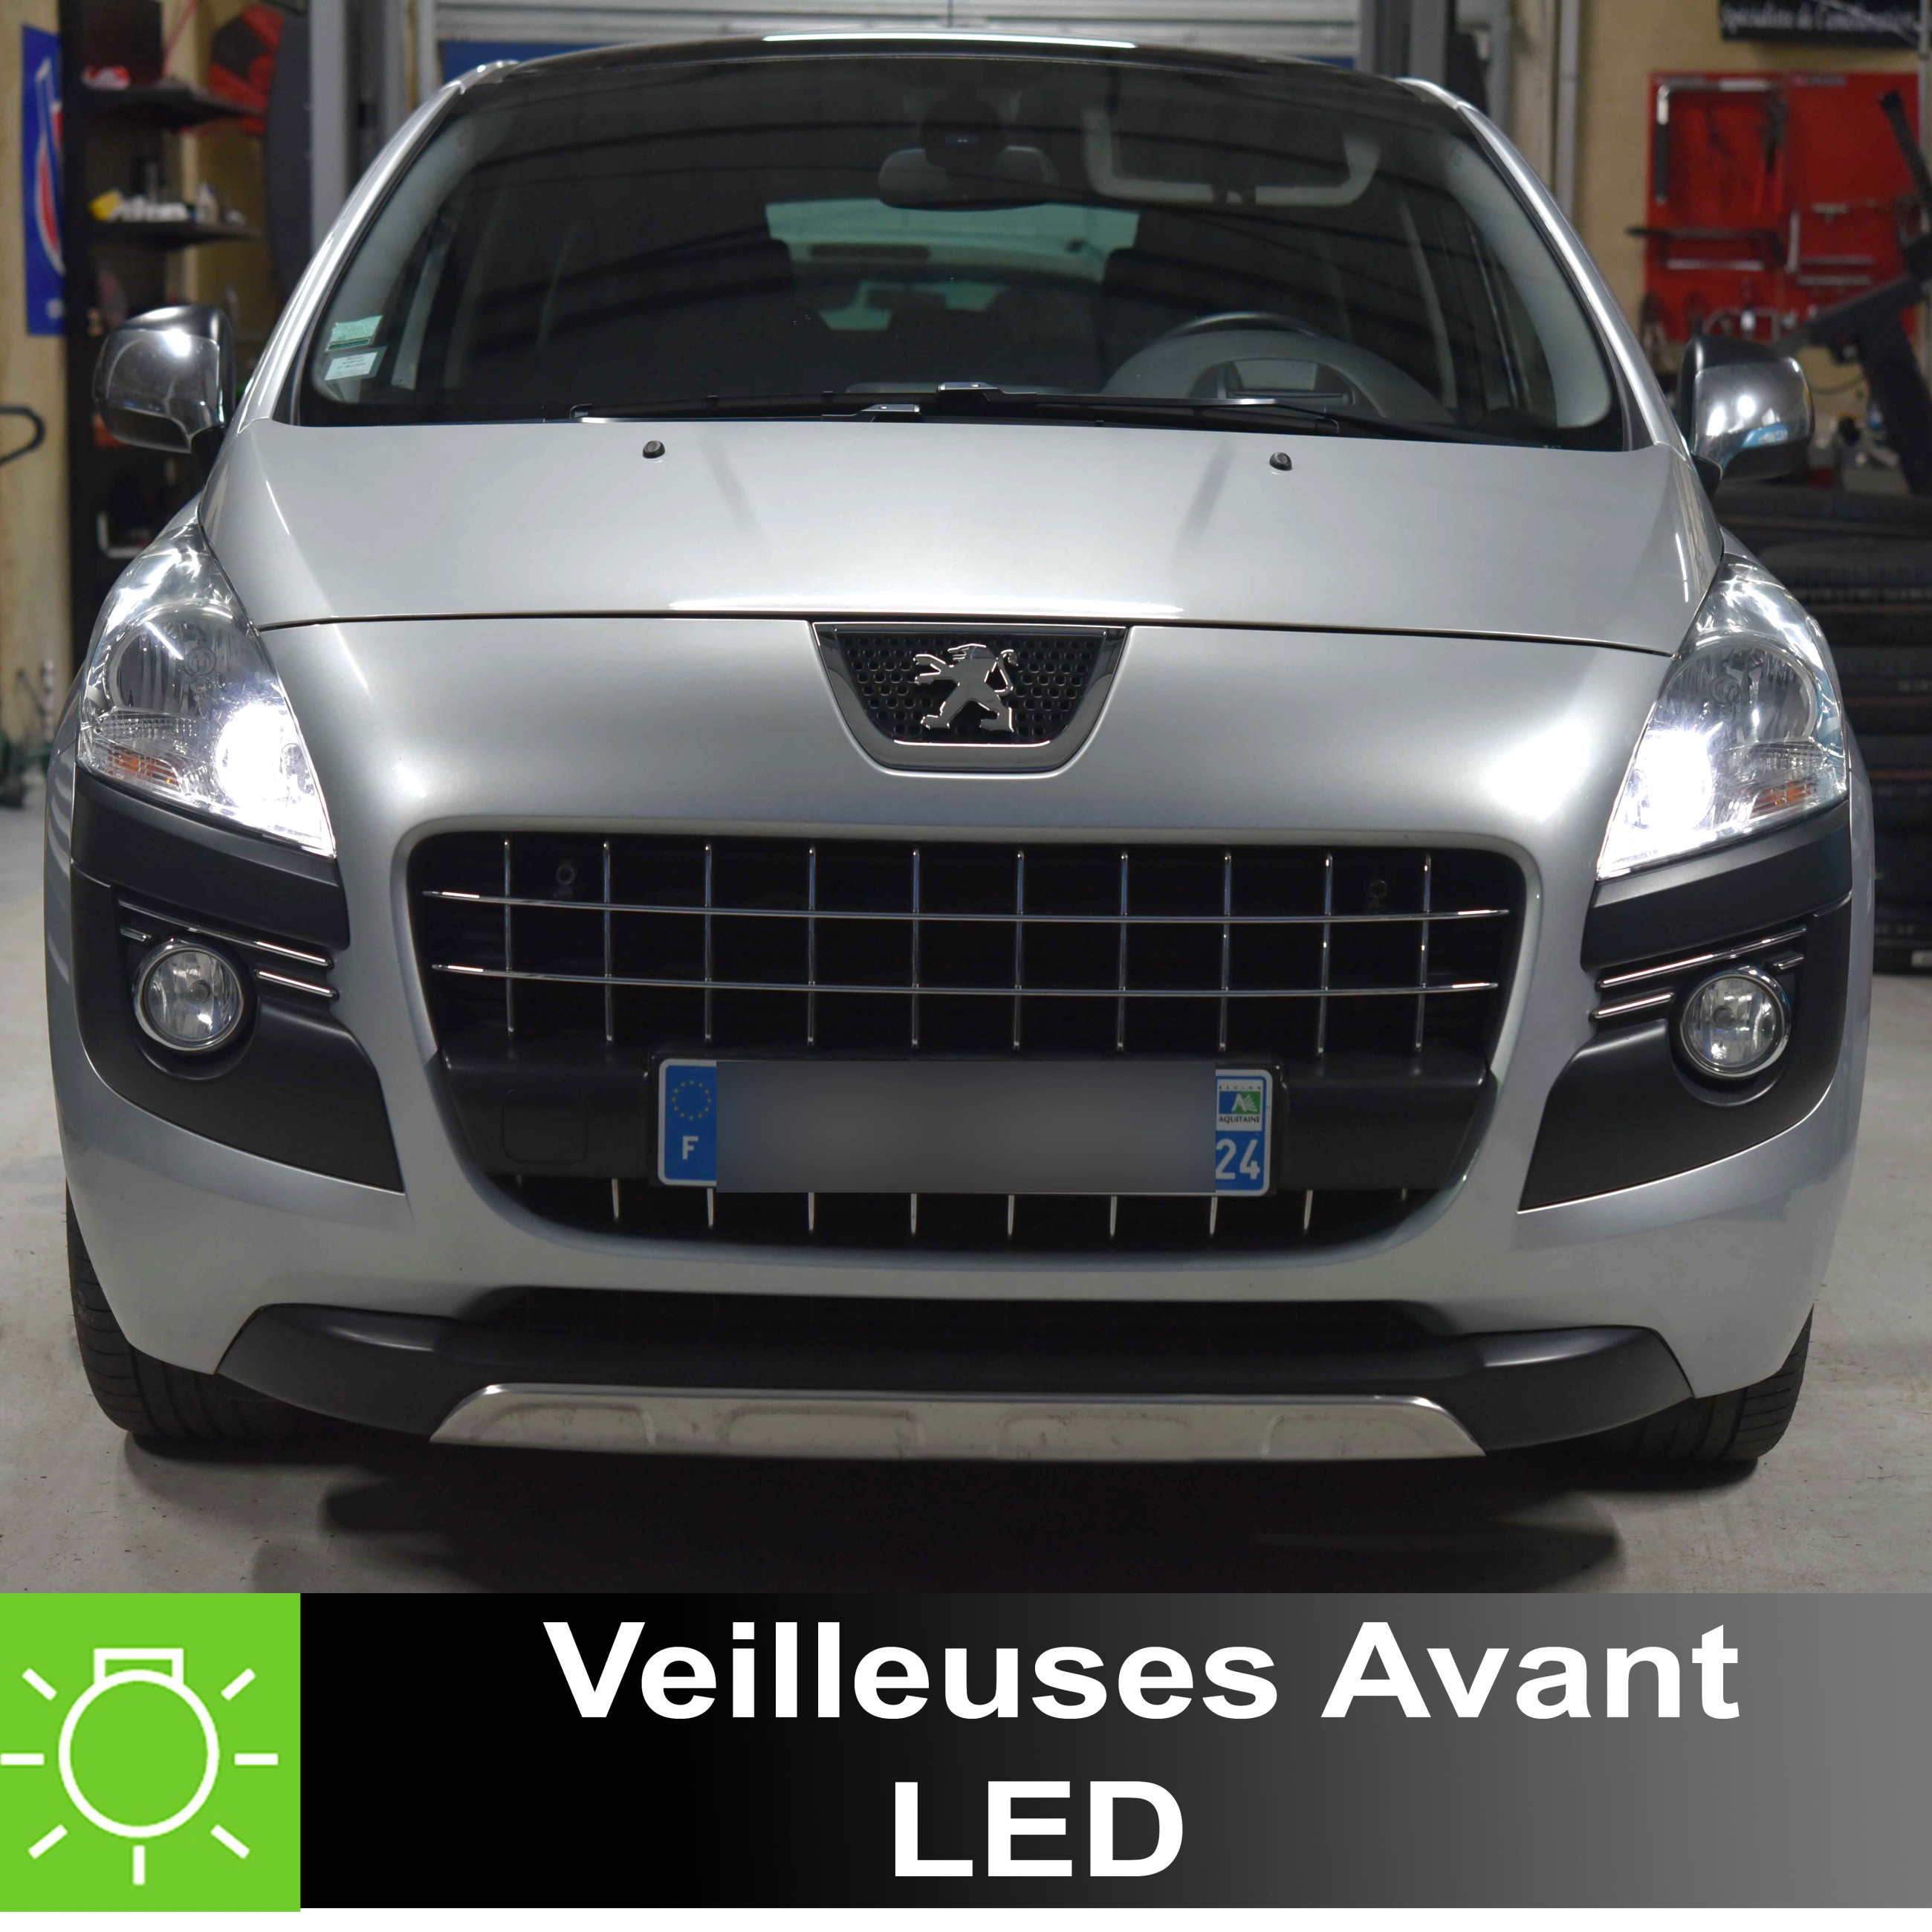 PACK LED Veilleuse Avant Peugeot 3008 - Année 2009 - 2016